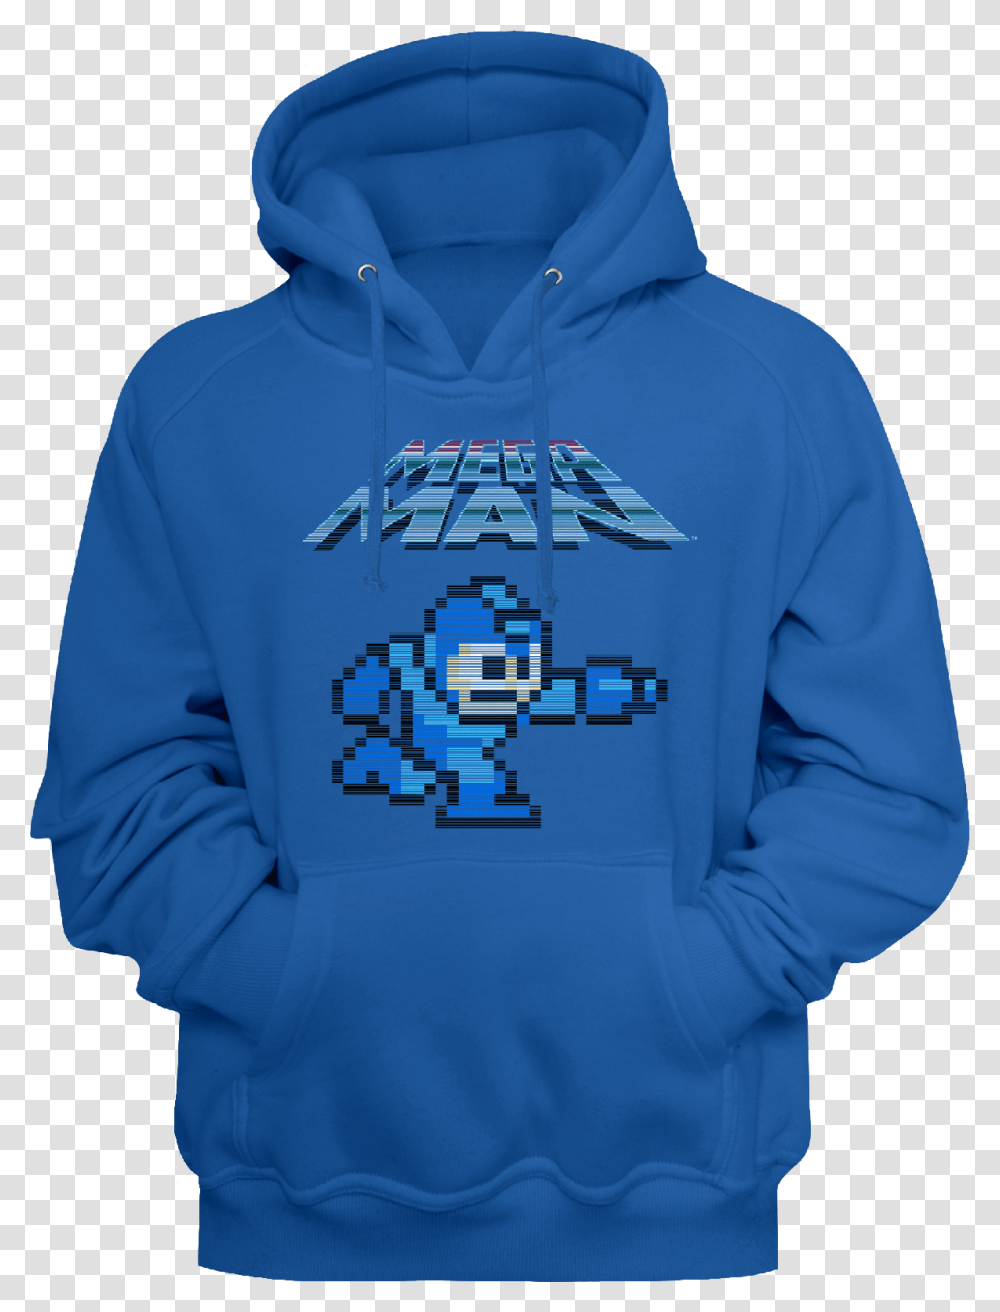 Mega Man Hoodie Hoodie, Apparel, Sweatshirt, Sweater Transparent Png